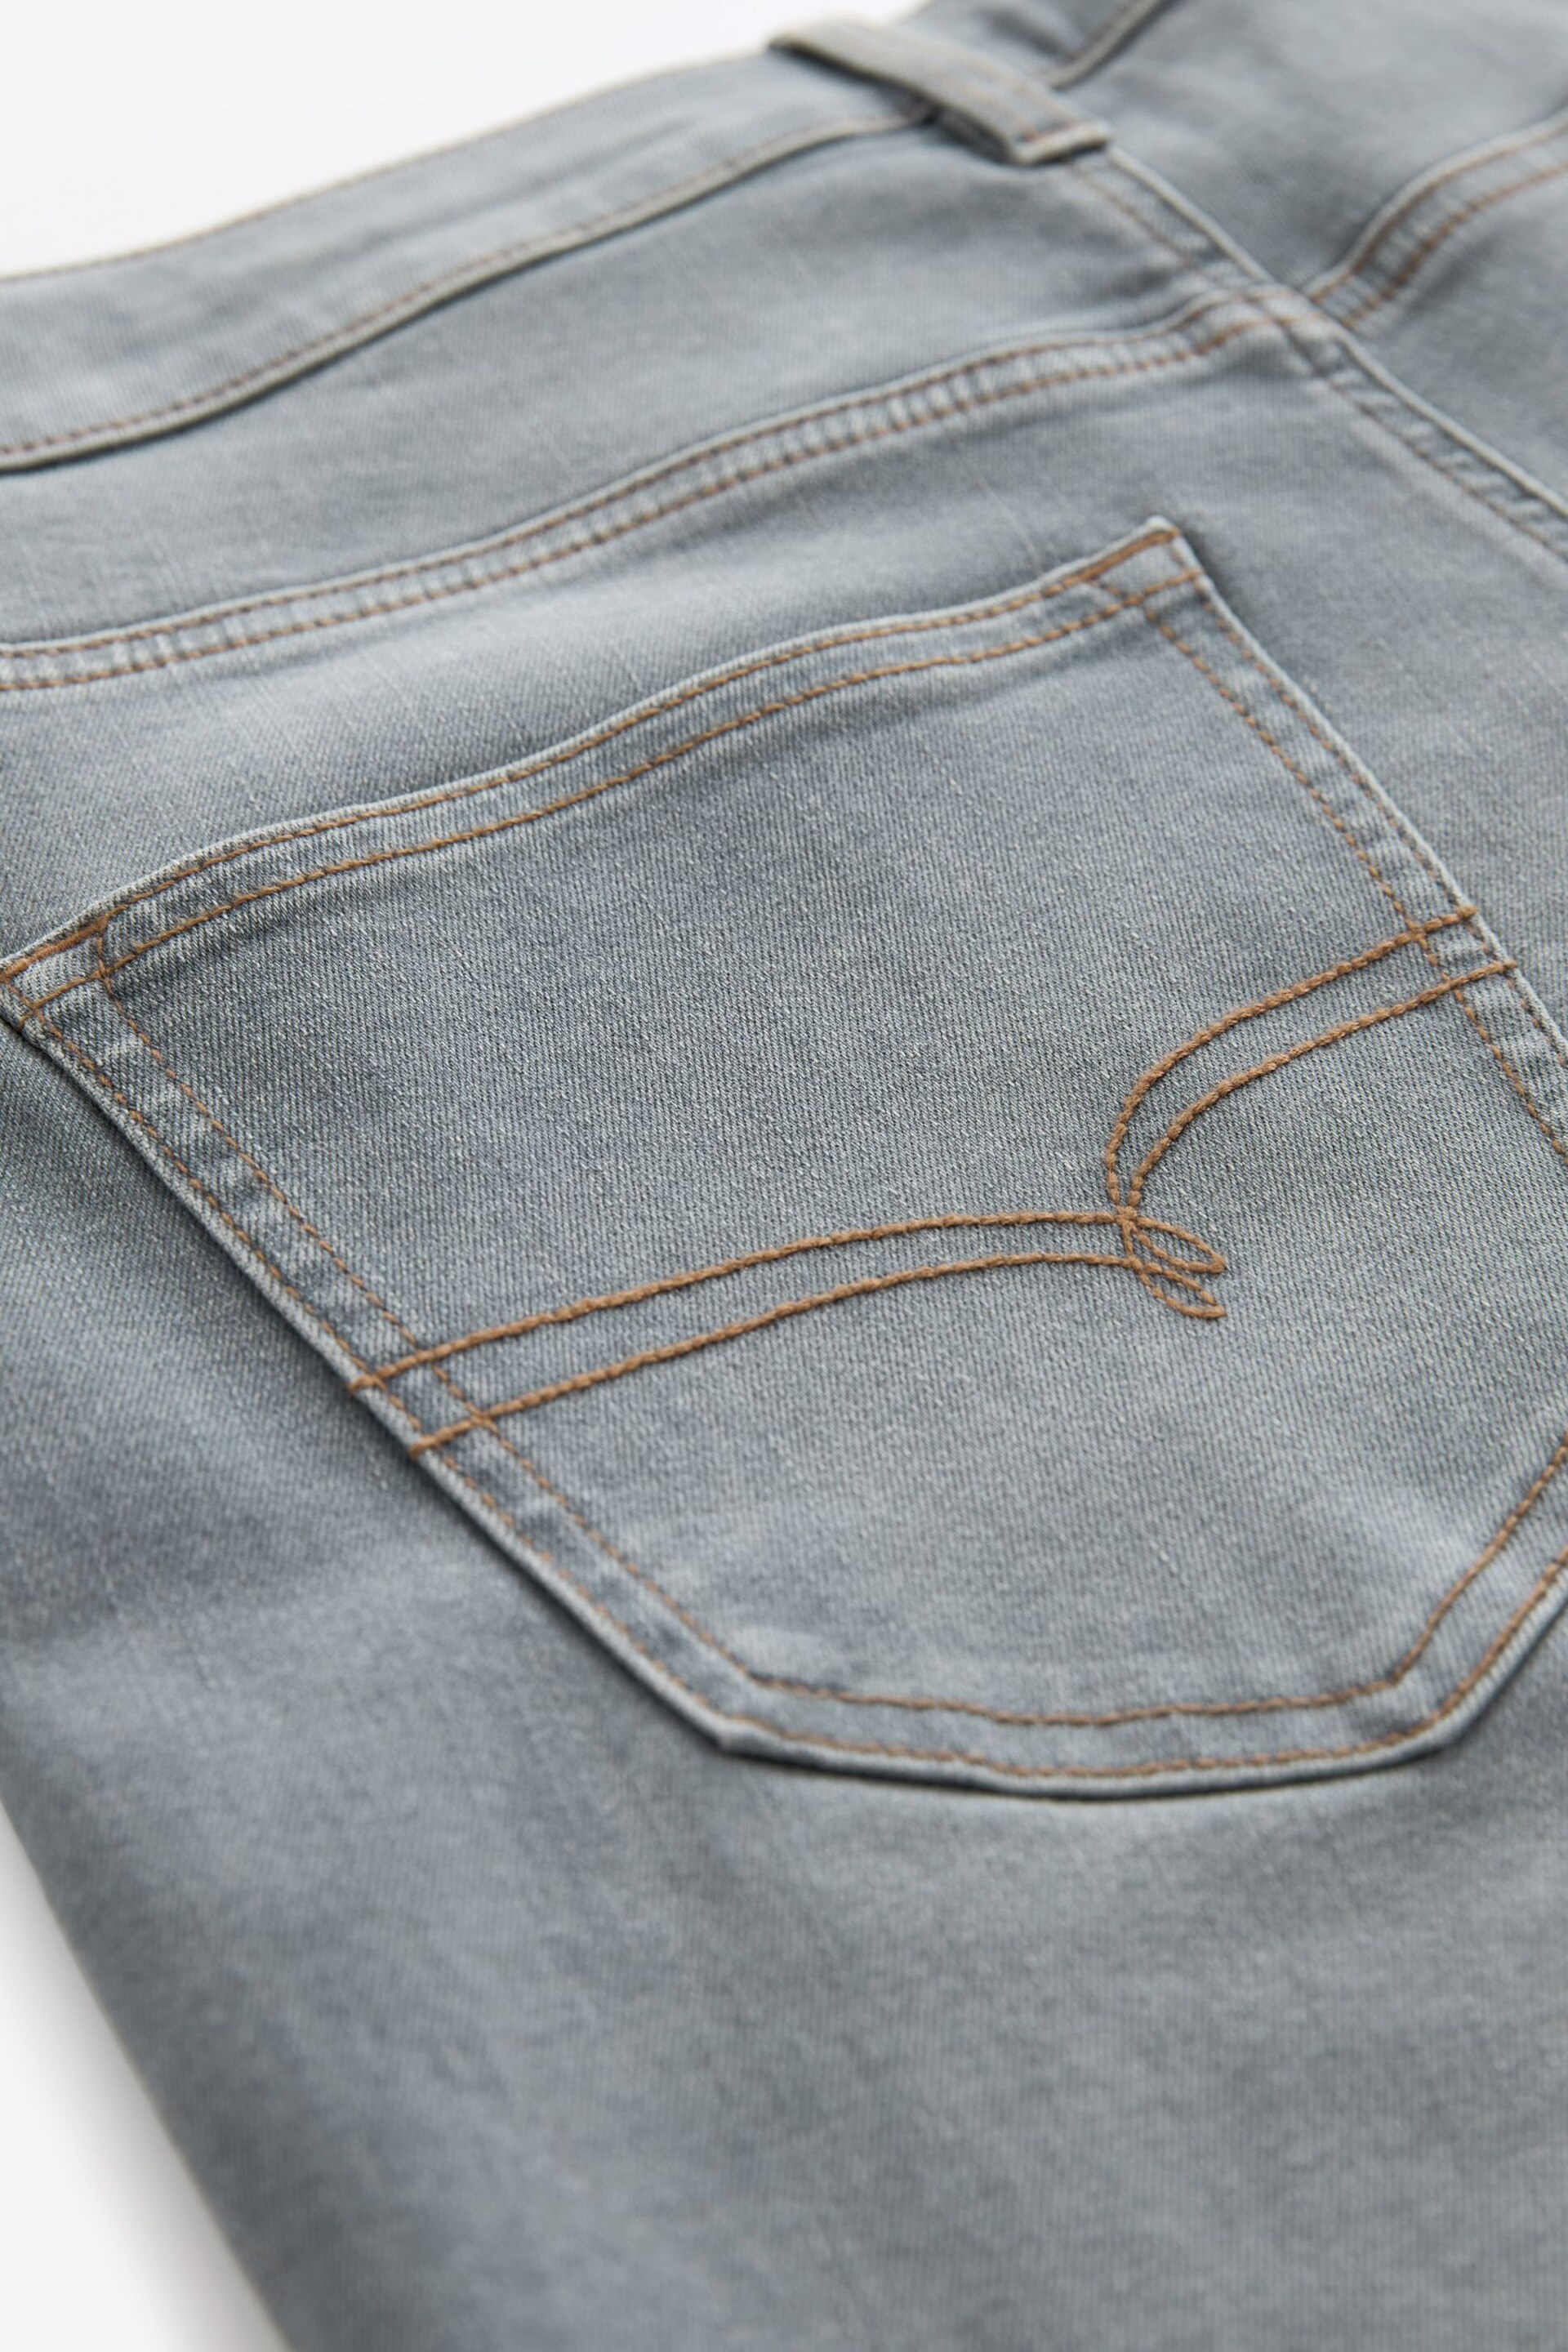 Light Grey Slim Fit Motion Flex Jeans - Image 12 of 13